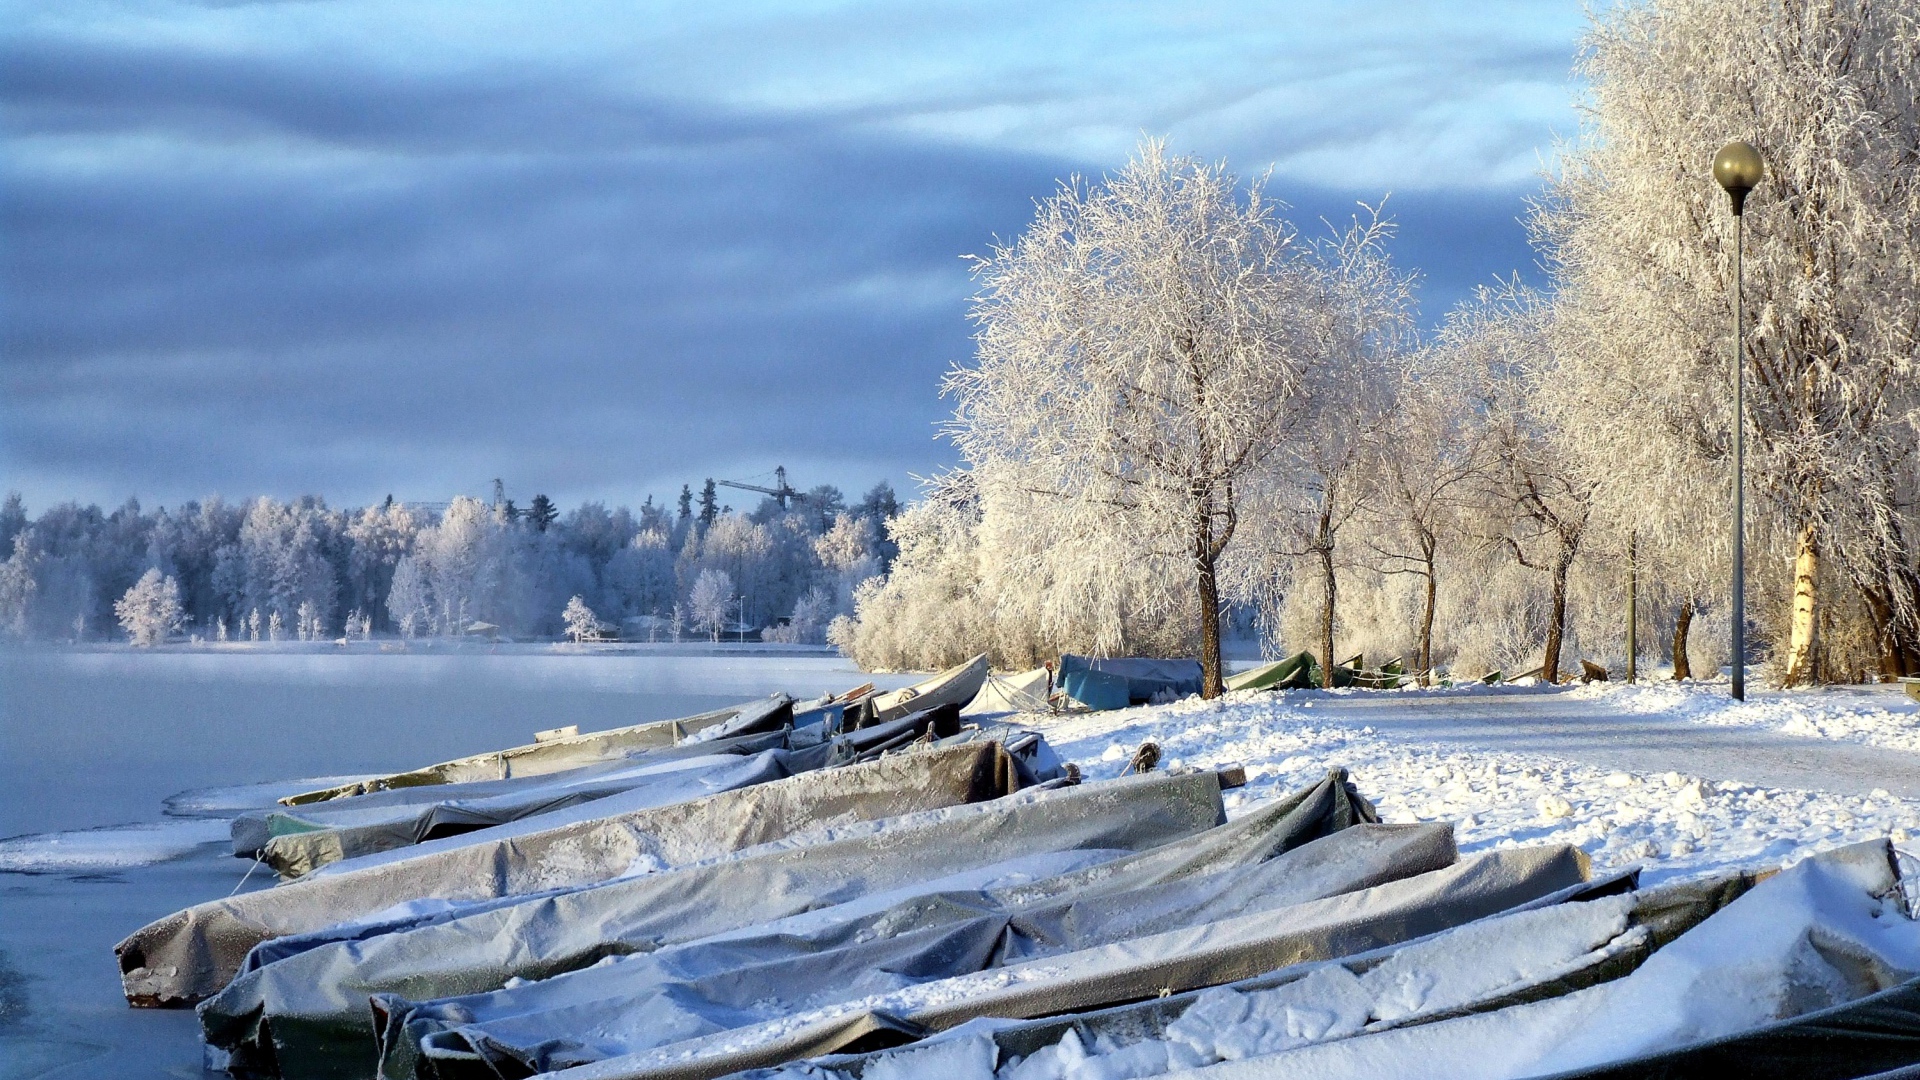 Накрытые лодки на берегу озера зимой